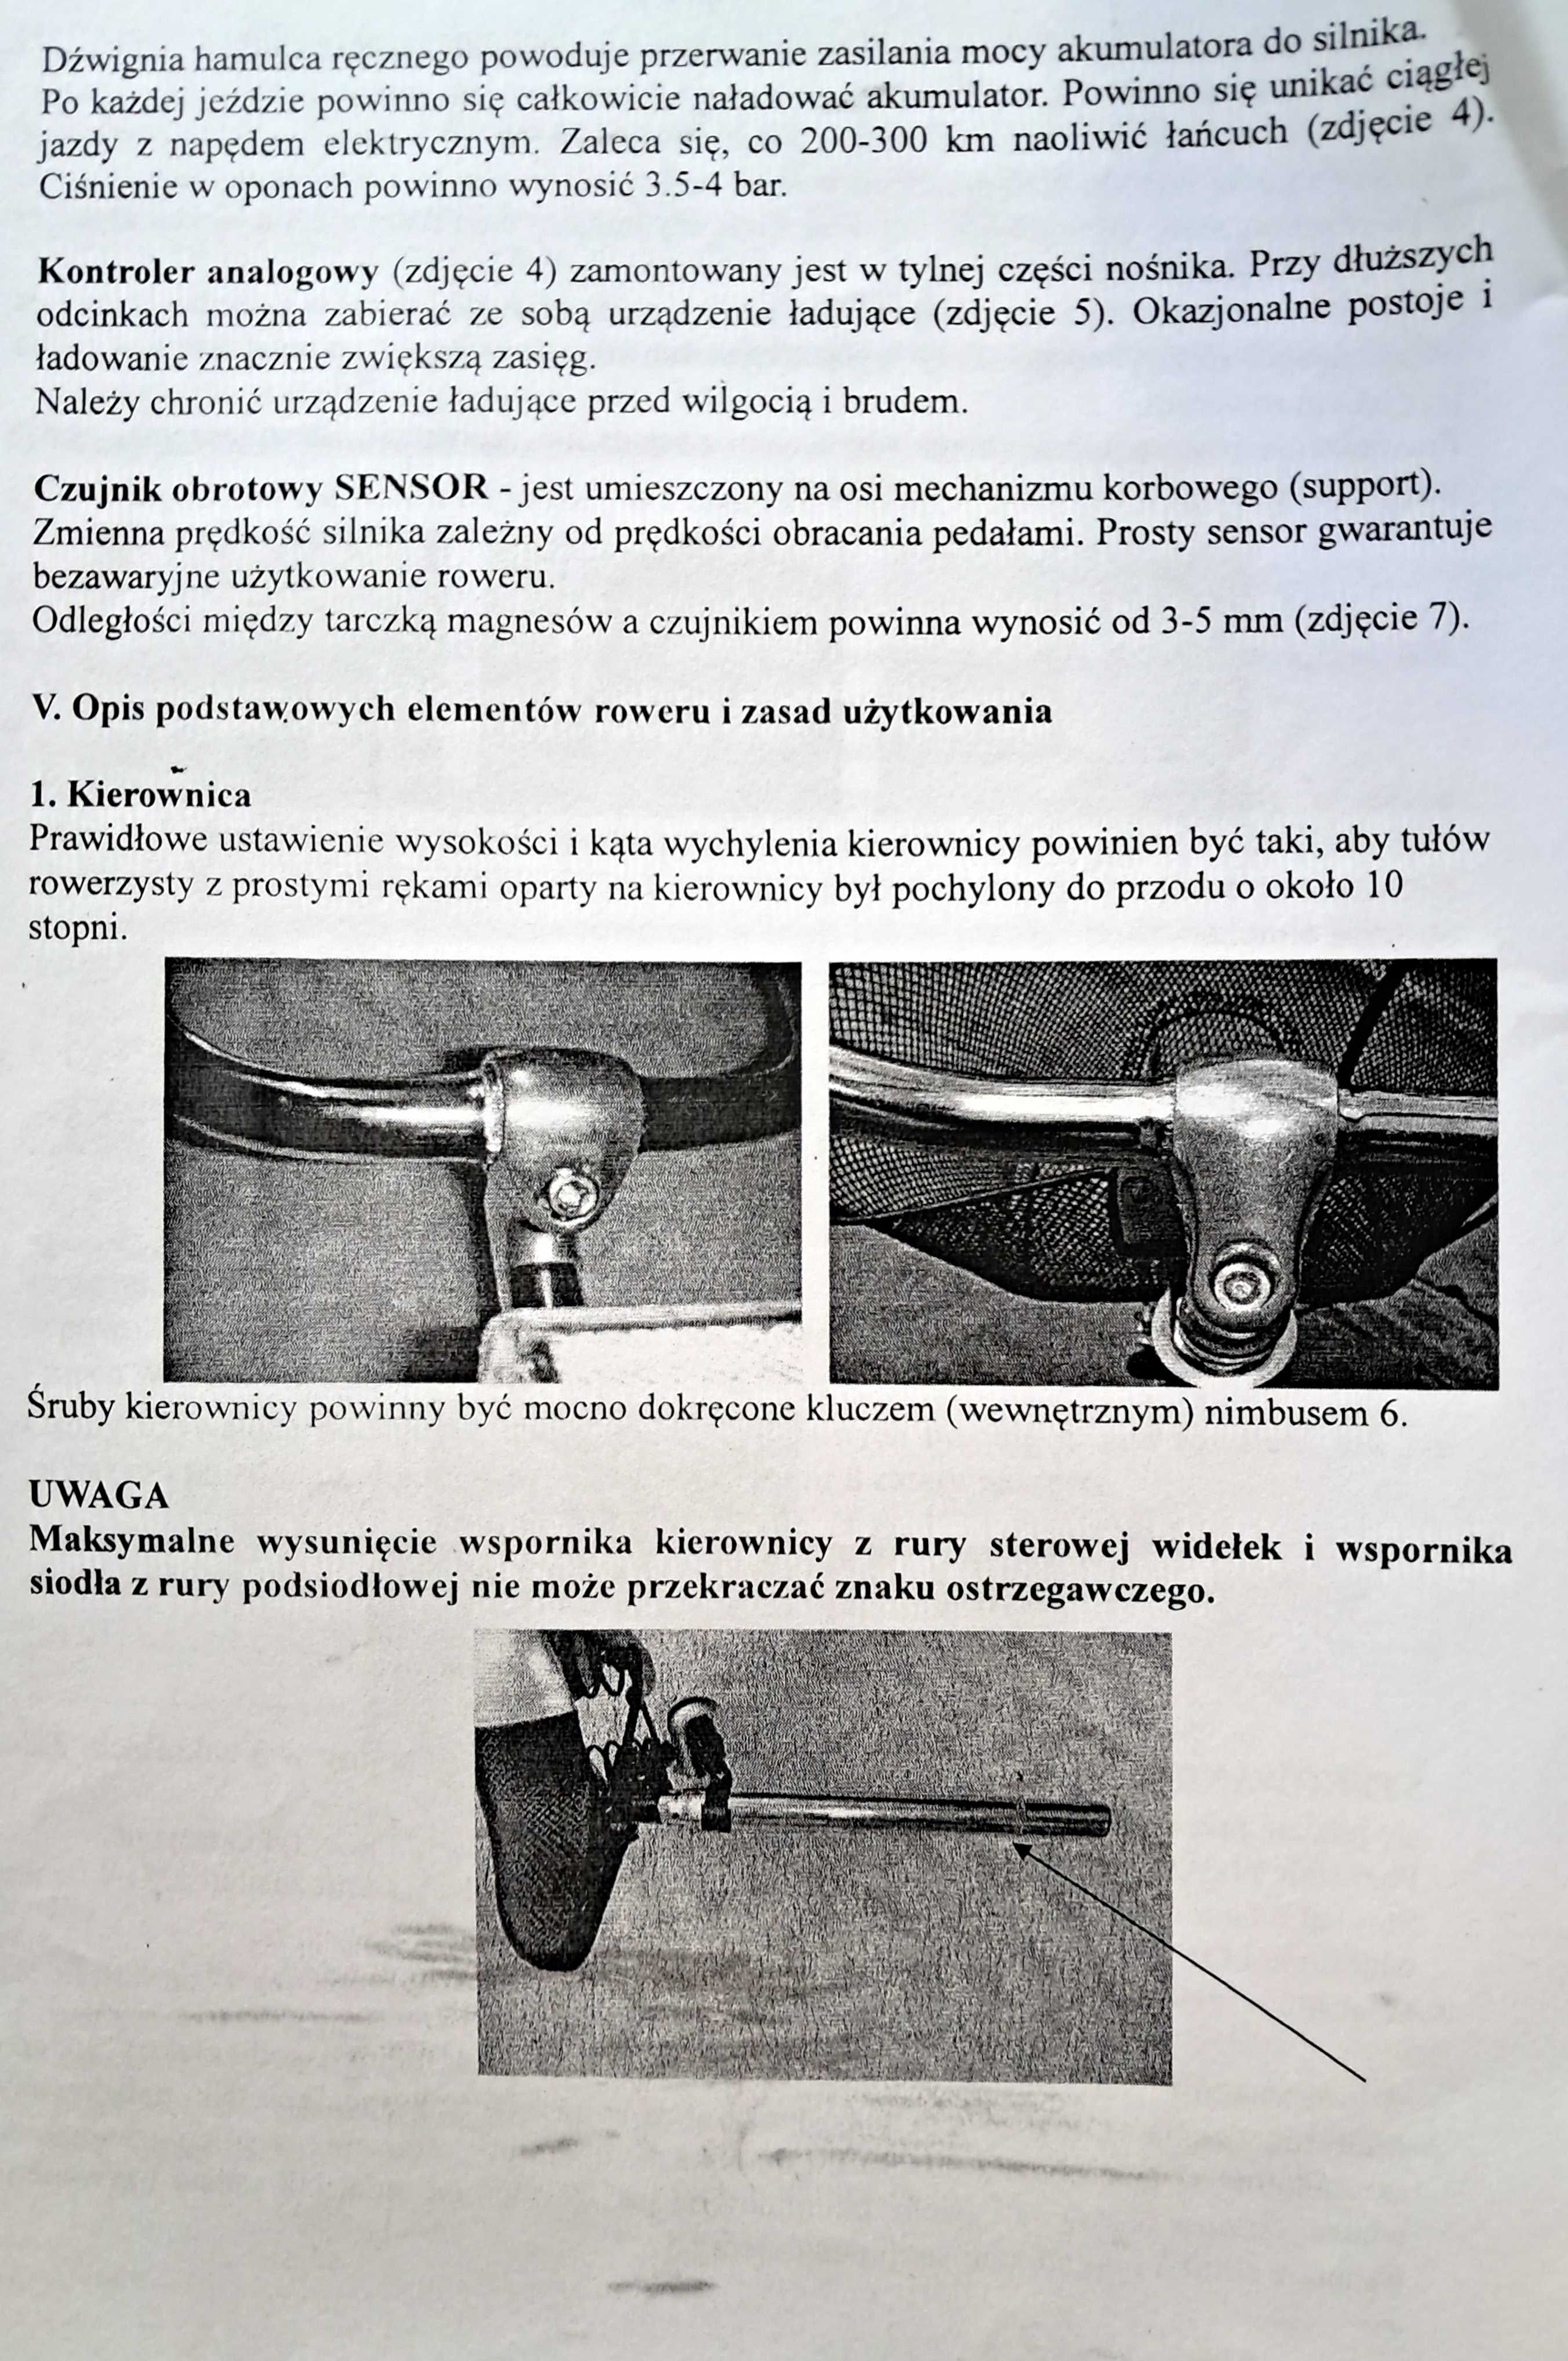 Trójkołowy rower rehabilitacyjny "Tolek z dod. napędem elektrycznym.